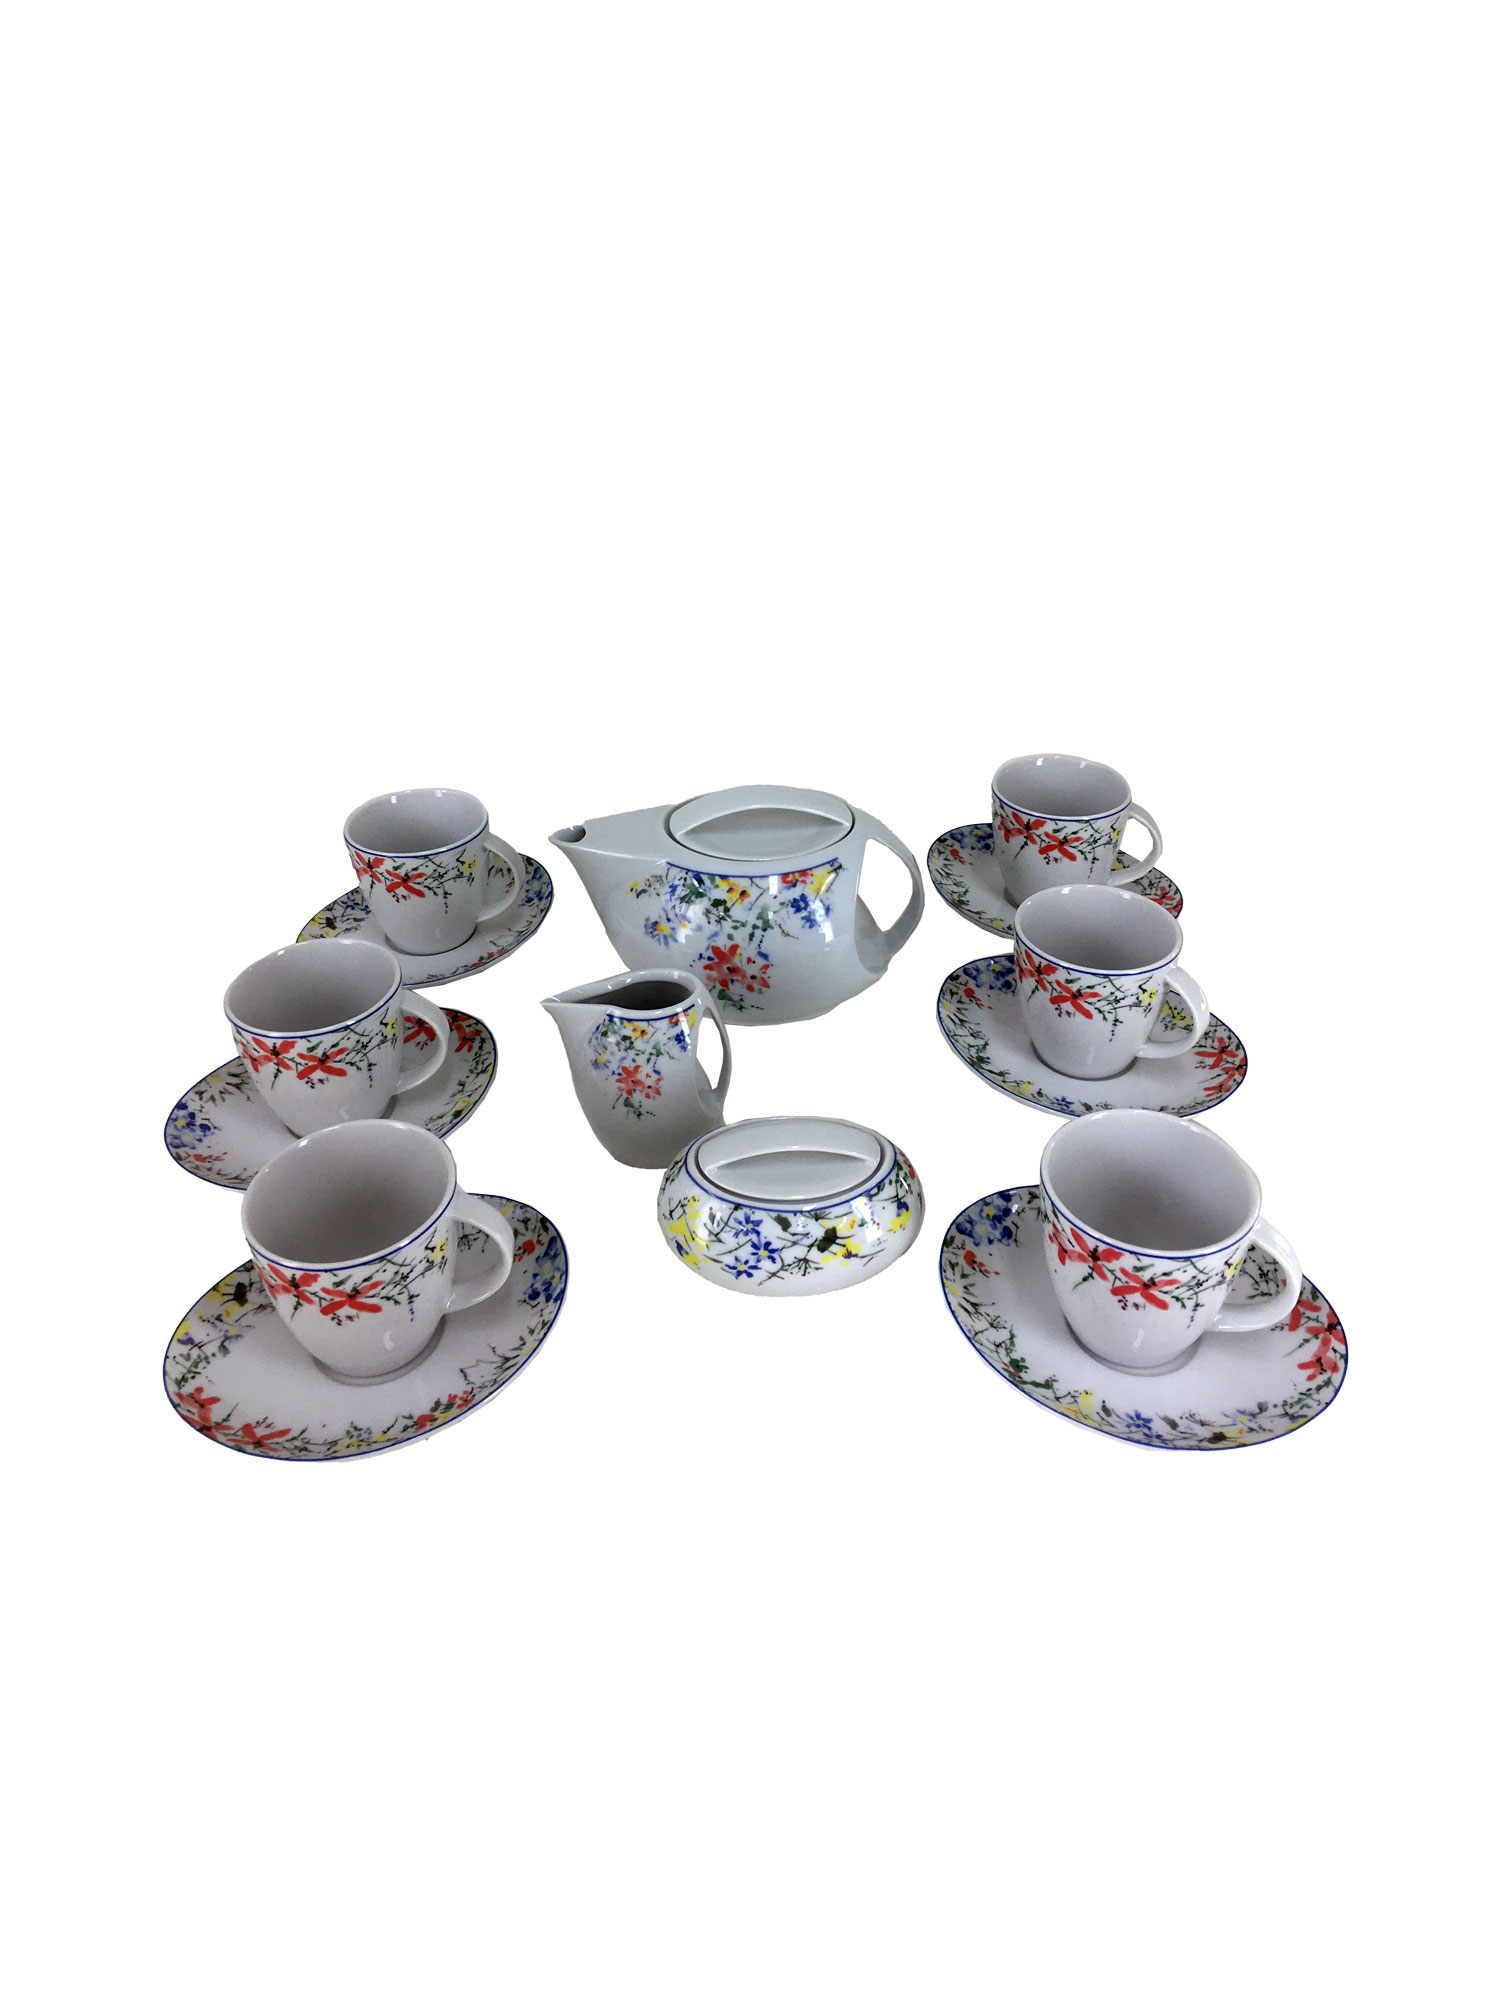 Чайный сервиз Loos на 6 персон 17 предметов декор Цветочный орнамент. Фарфор Тхун, Чехия.